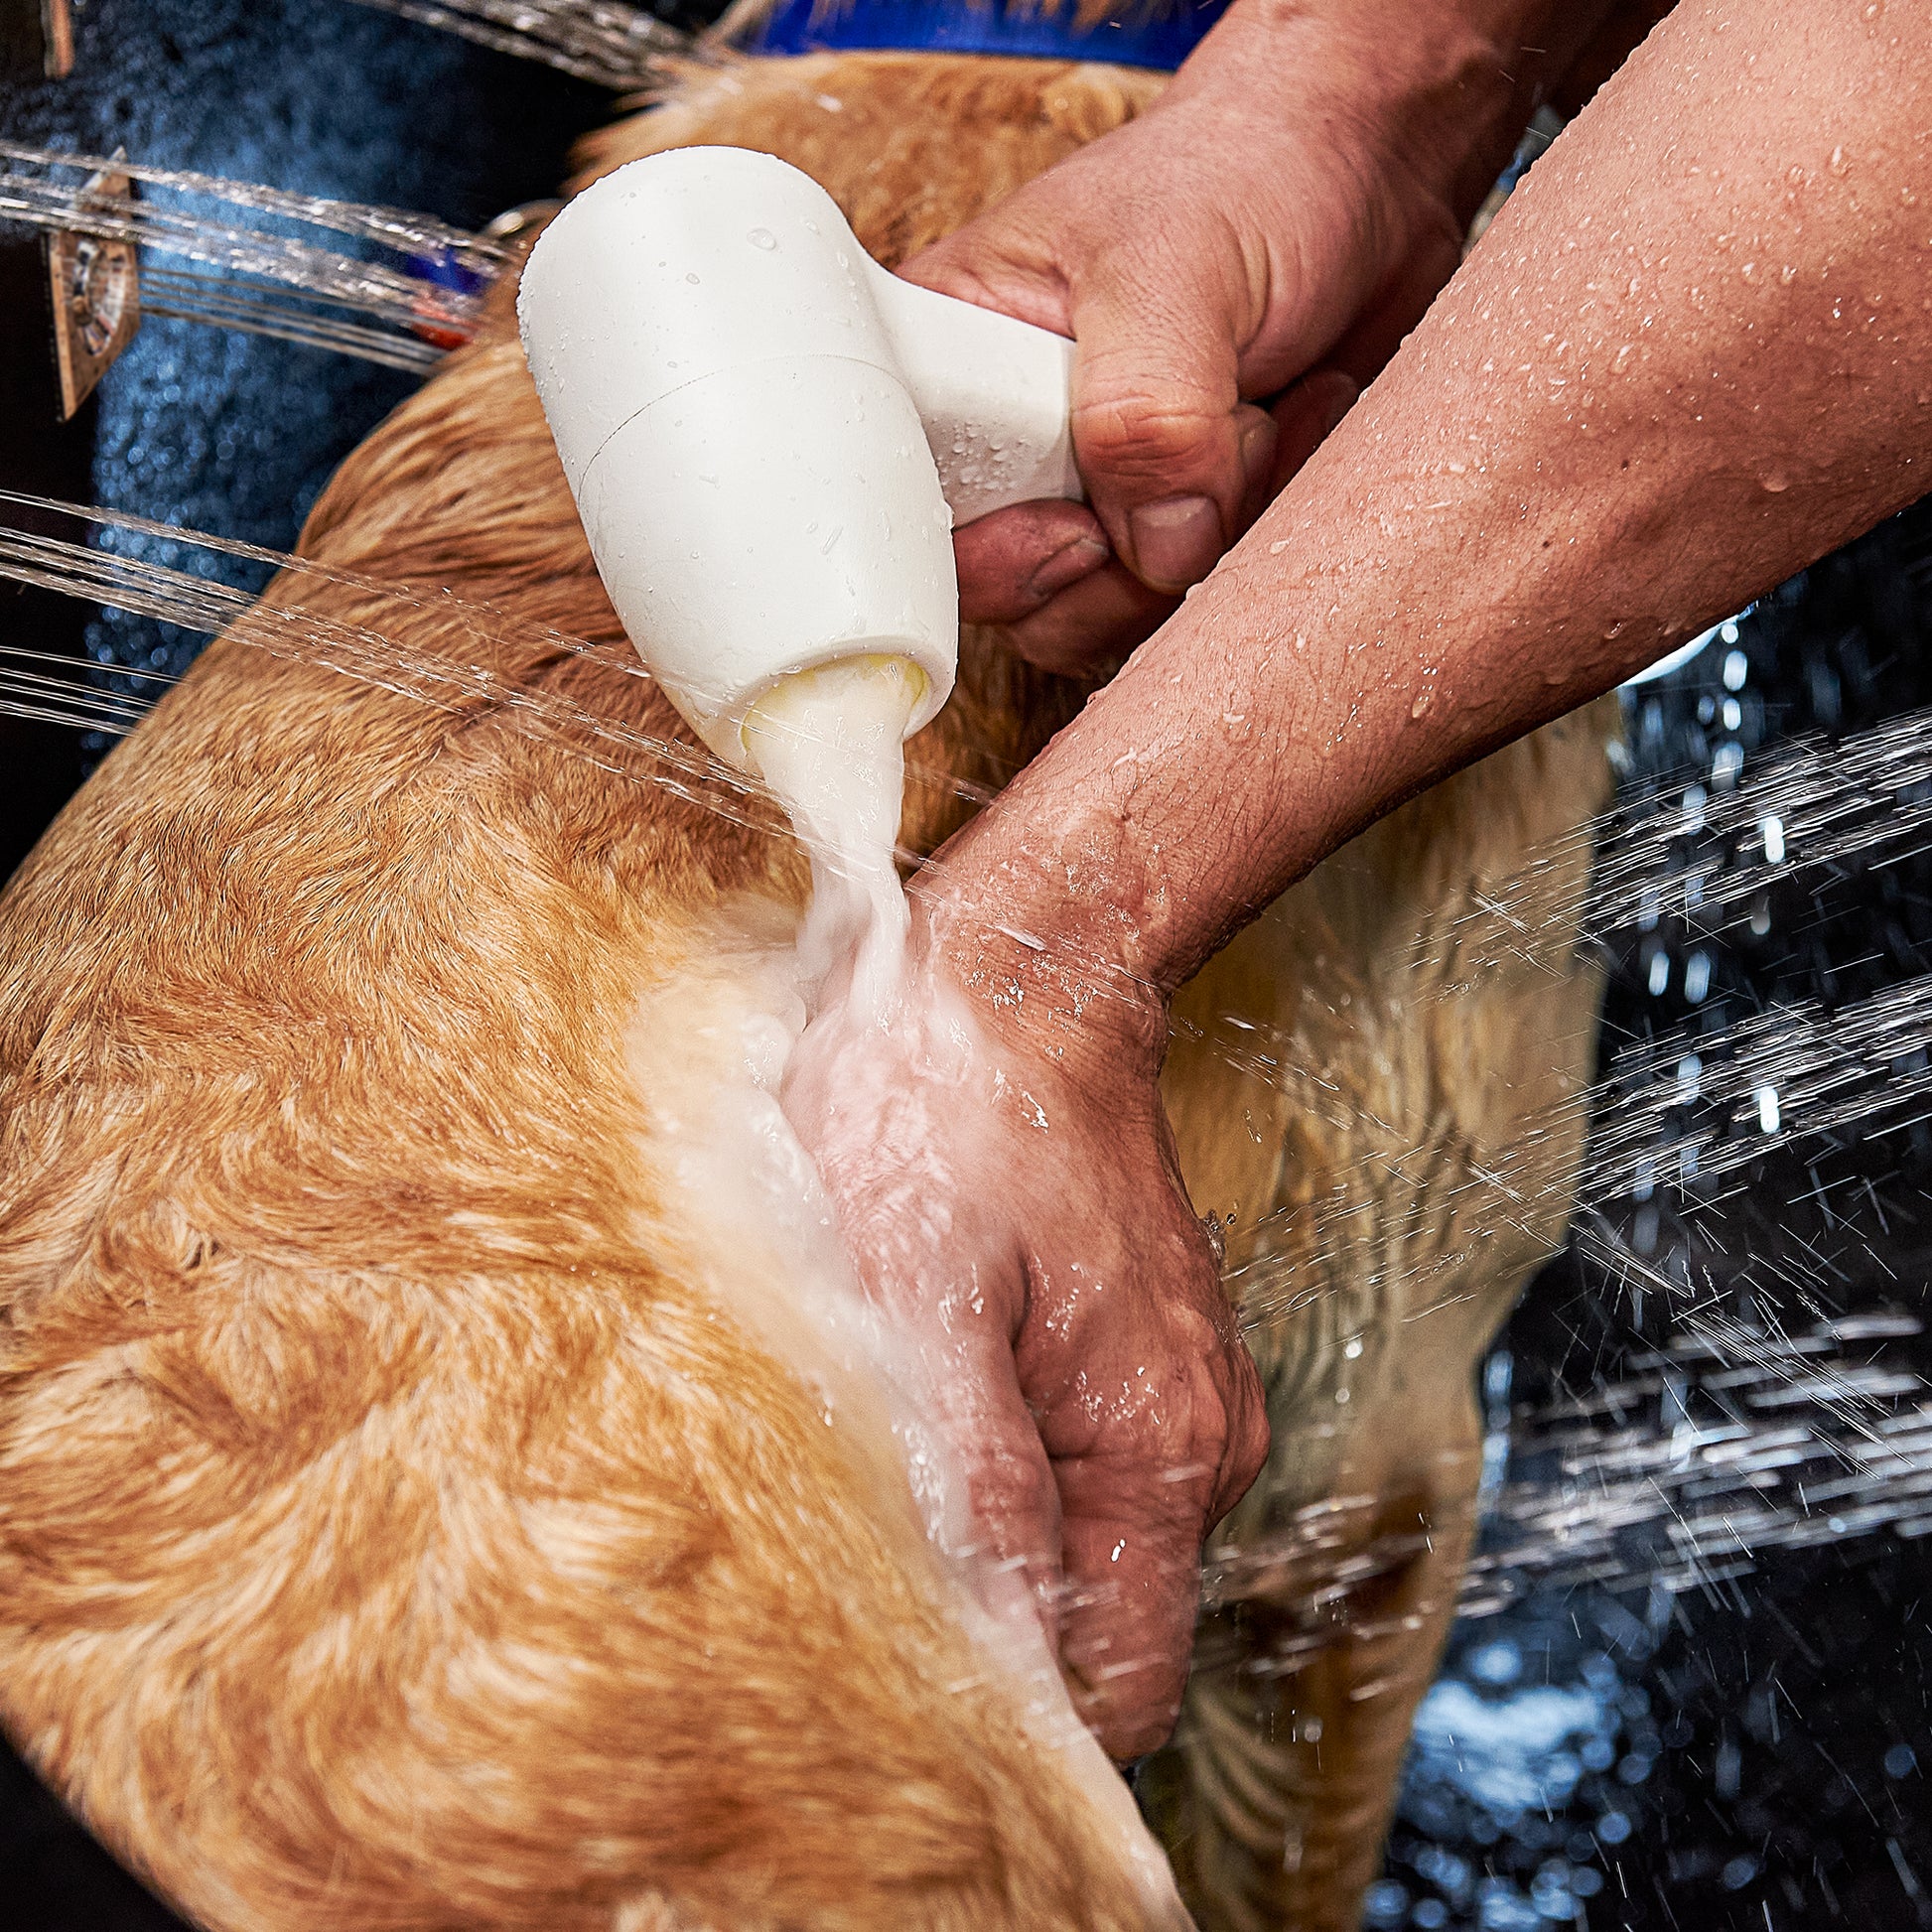 Dog Pet Walk-In Bath Tub, Infusion Microbubble Therapy, Ozone Sterilization